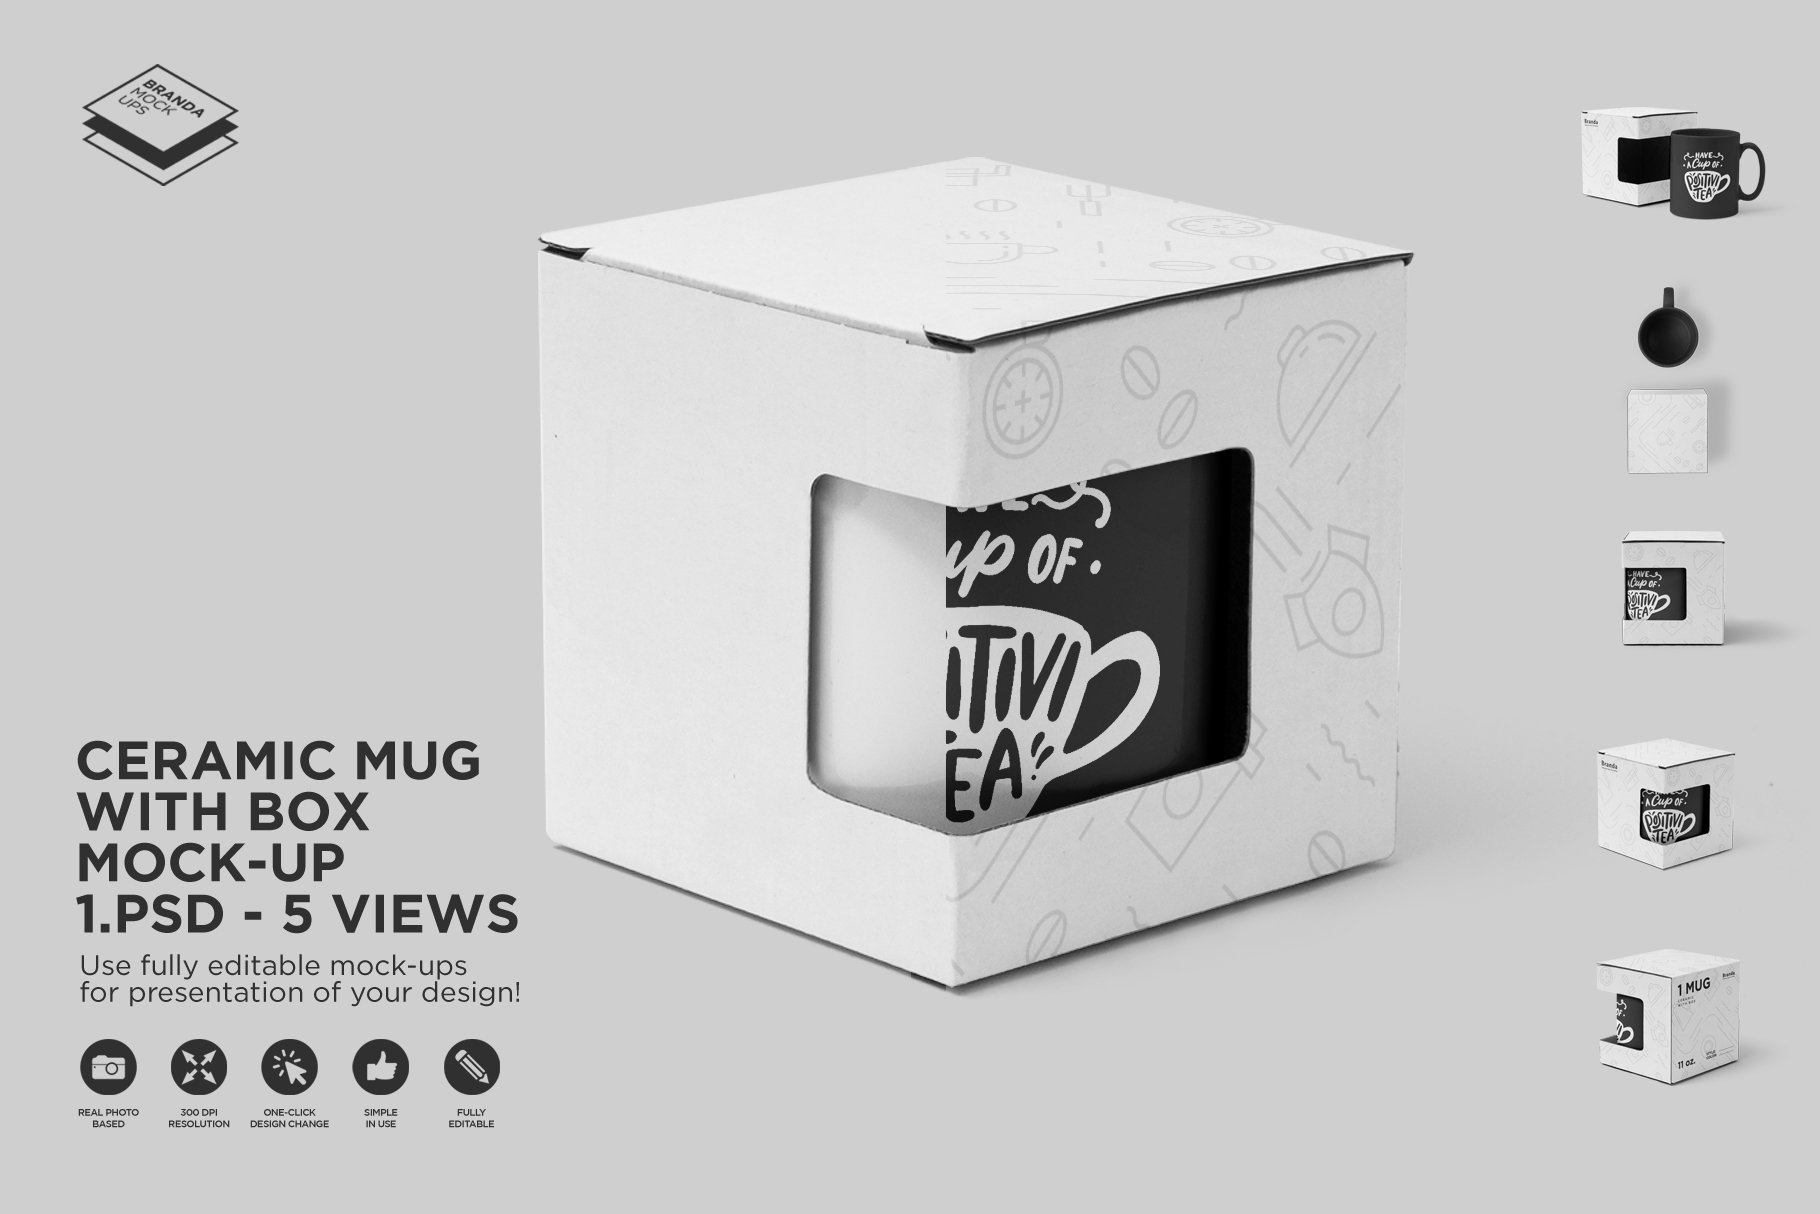 Ceramic Mug with Box Mock-up cover image.